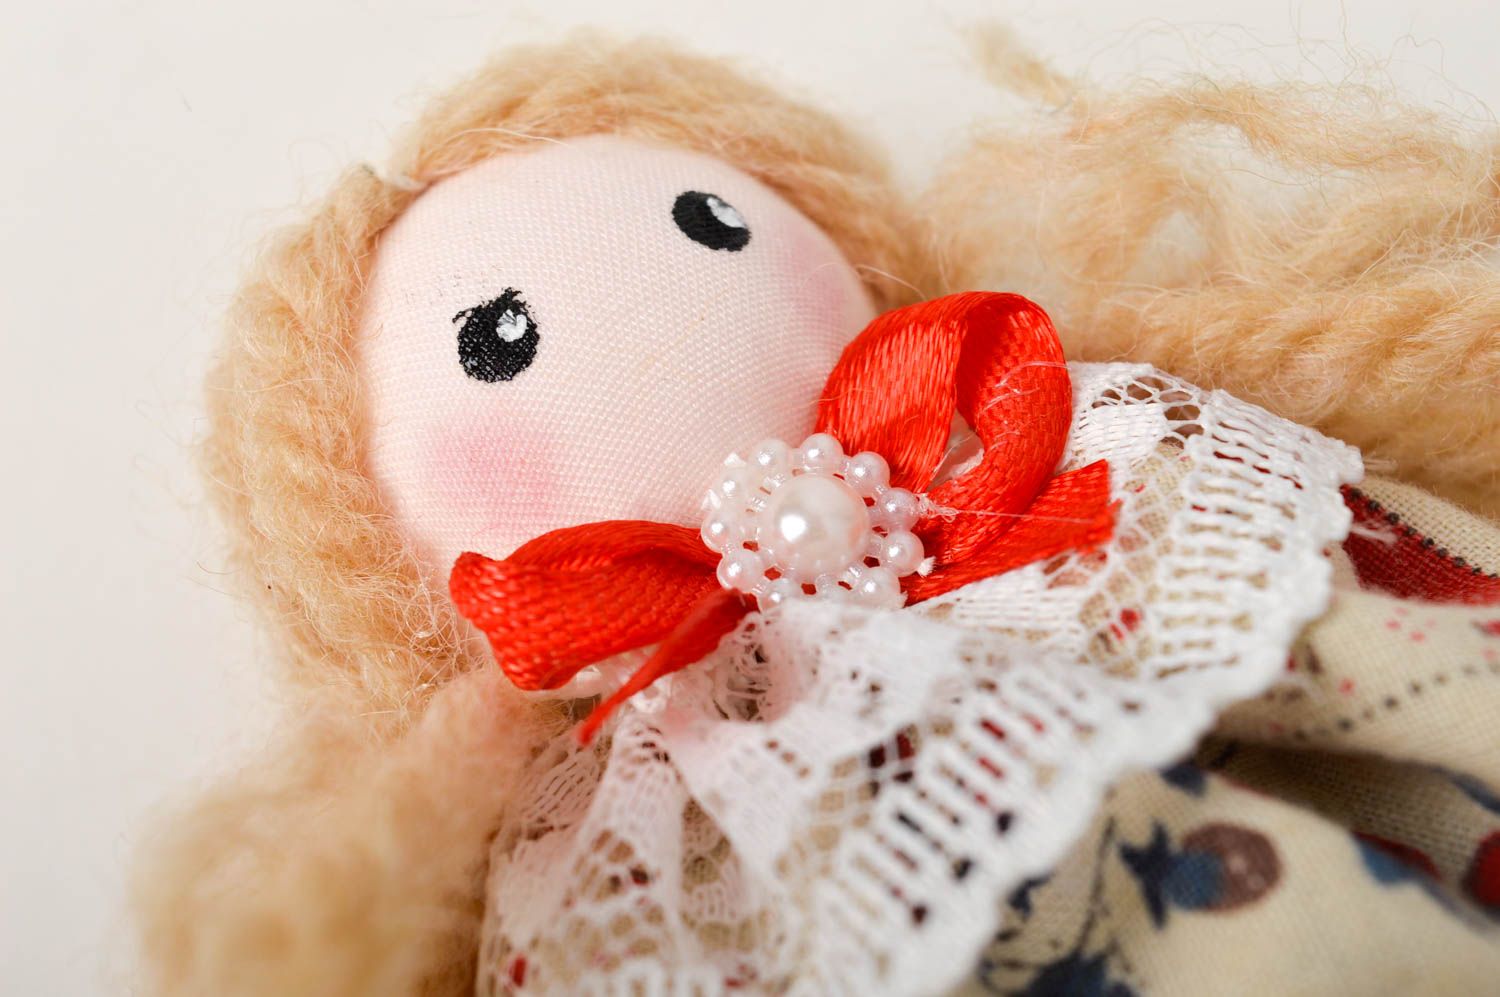 Кукла ручной работы кукла из ткани маленькая авторская кукла с запахом лаванды фото 3